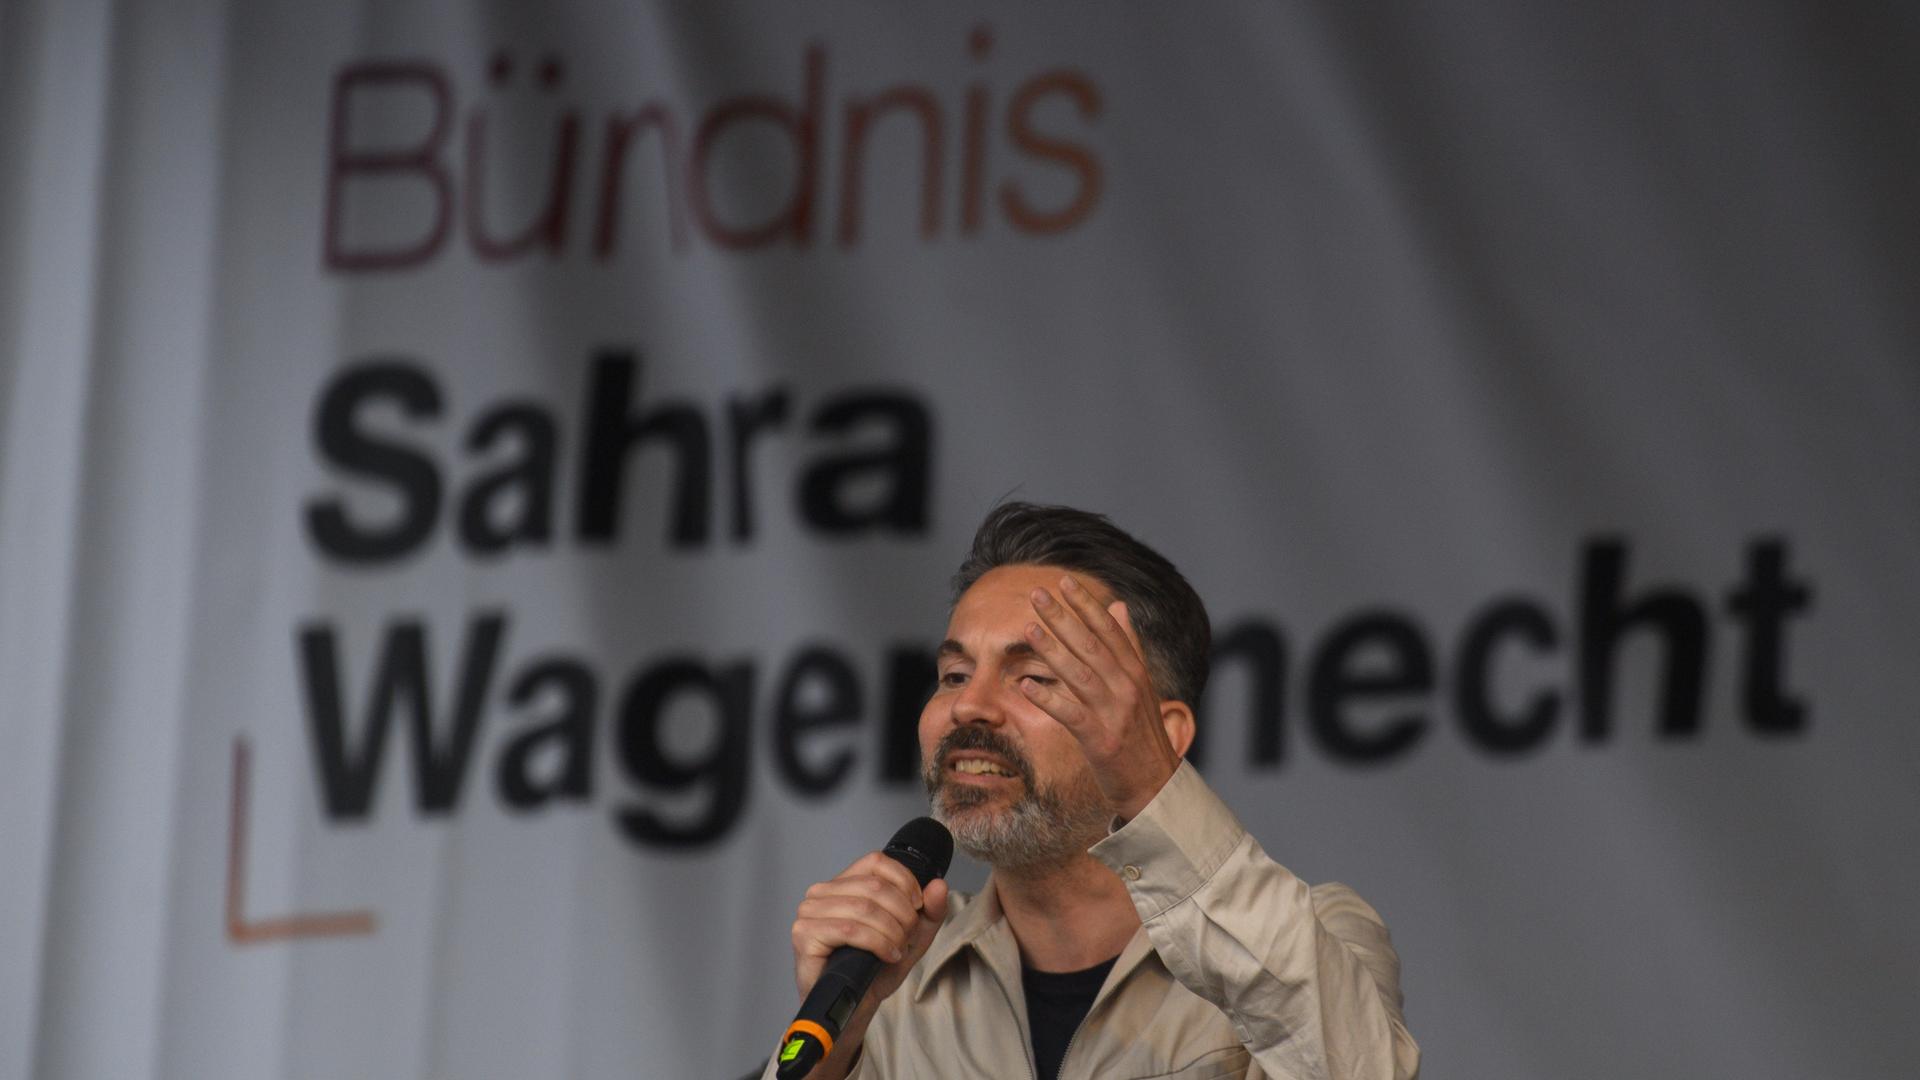 Fabio De Masi vom Bündnis Sahra Wagenknecht spricht auf einer Wahlkampfveranstaltung in Magdeburg zu seinen Zuhörern. 